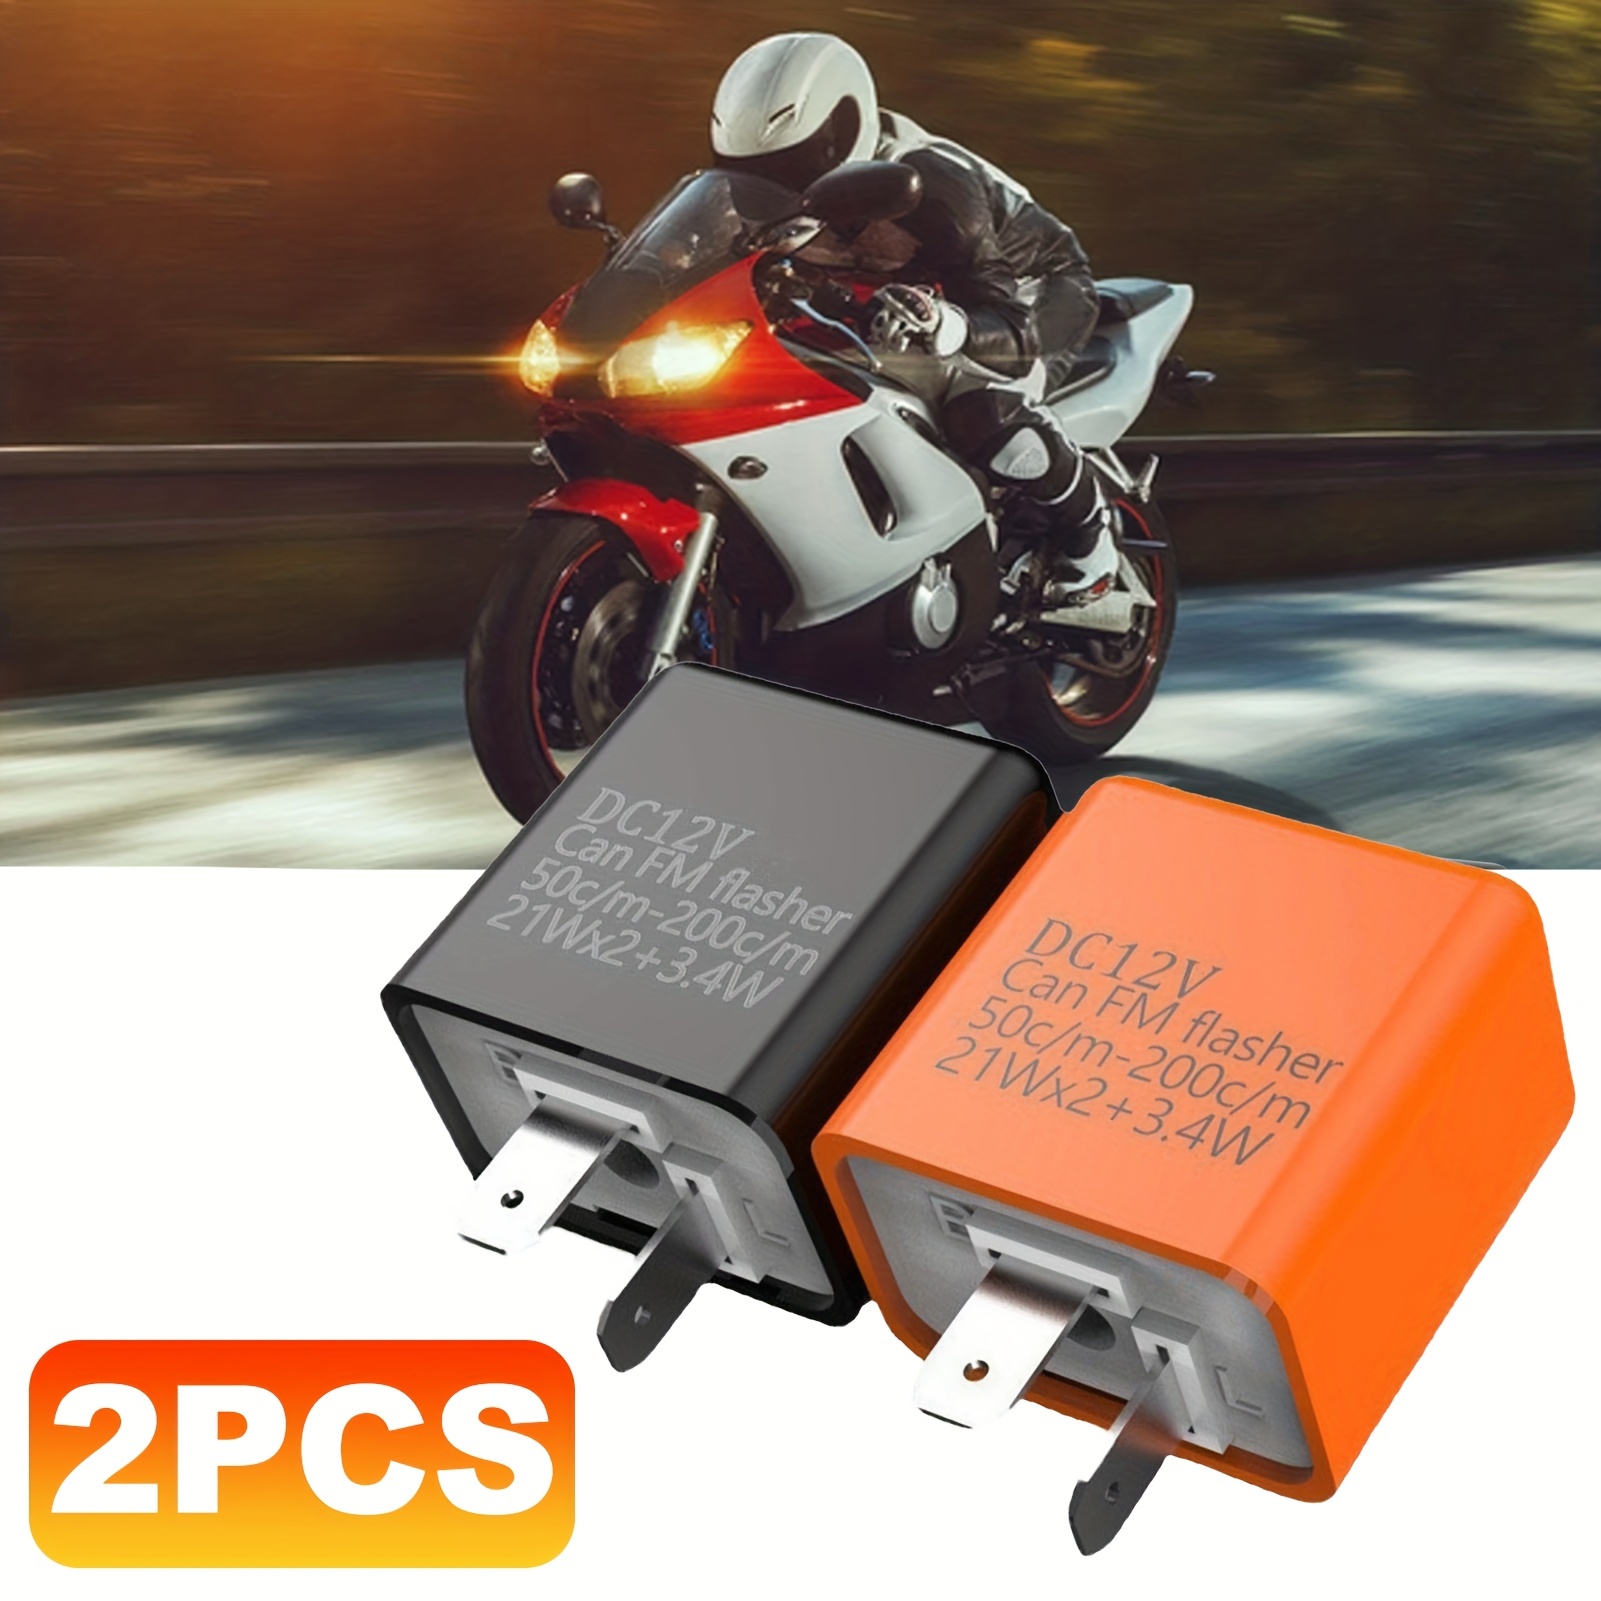 ETOPARS Orange 12V 2 Broches Relais Clignotant Réglable électronique  Flasheur Indicateur Vitesse Universel Moto